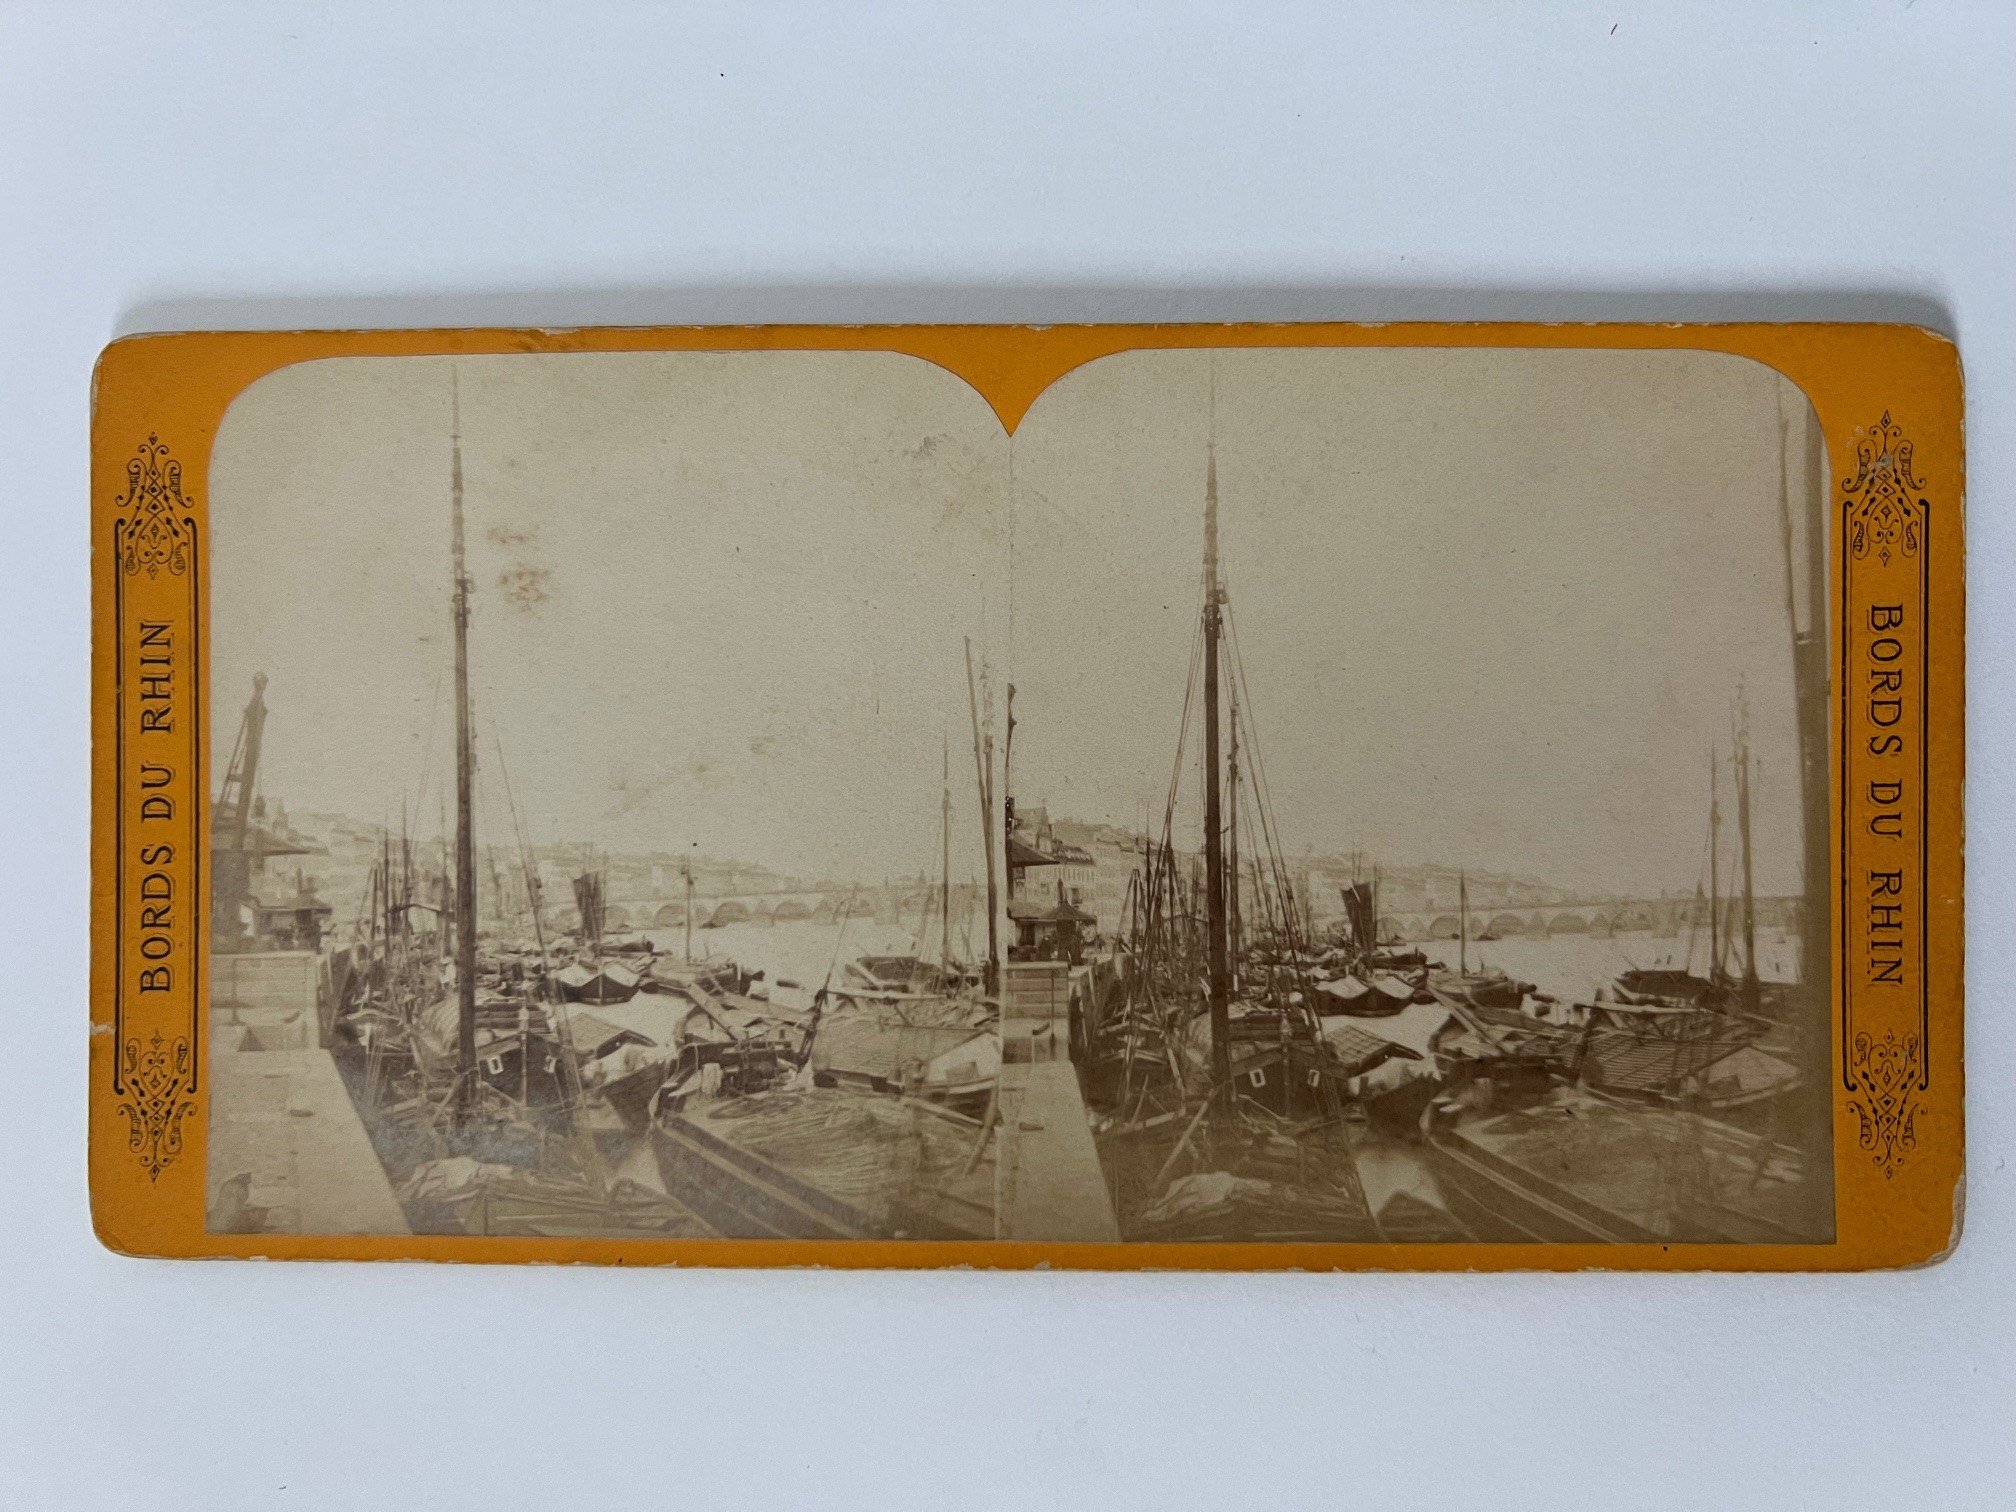 Stereobild, Unbekannter Fotograf, Frankfurt, Nr. 407, Vue Generale du Port, ca. 1874. (Taunus-Rhein-Main - Regionalgeschichtliche Sammlung Dr. Stefan Naas CC BY-NC-SA)